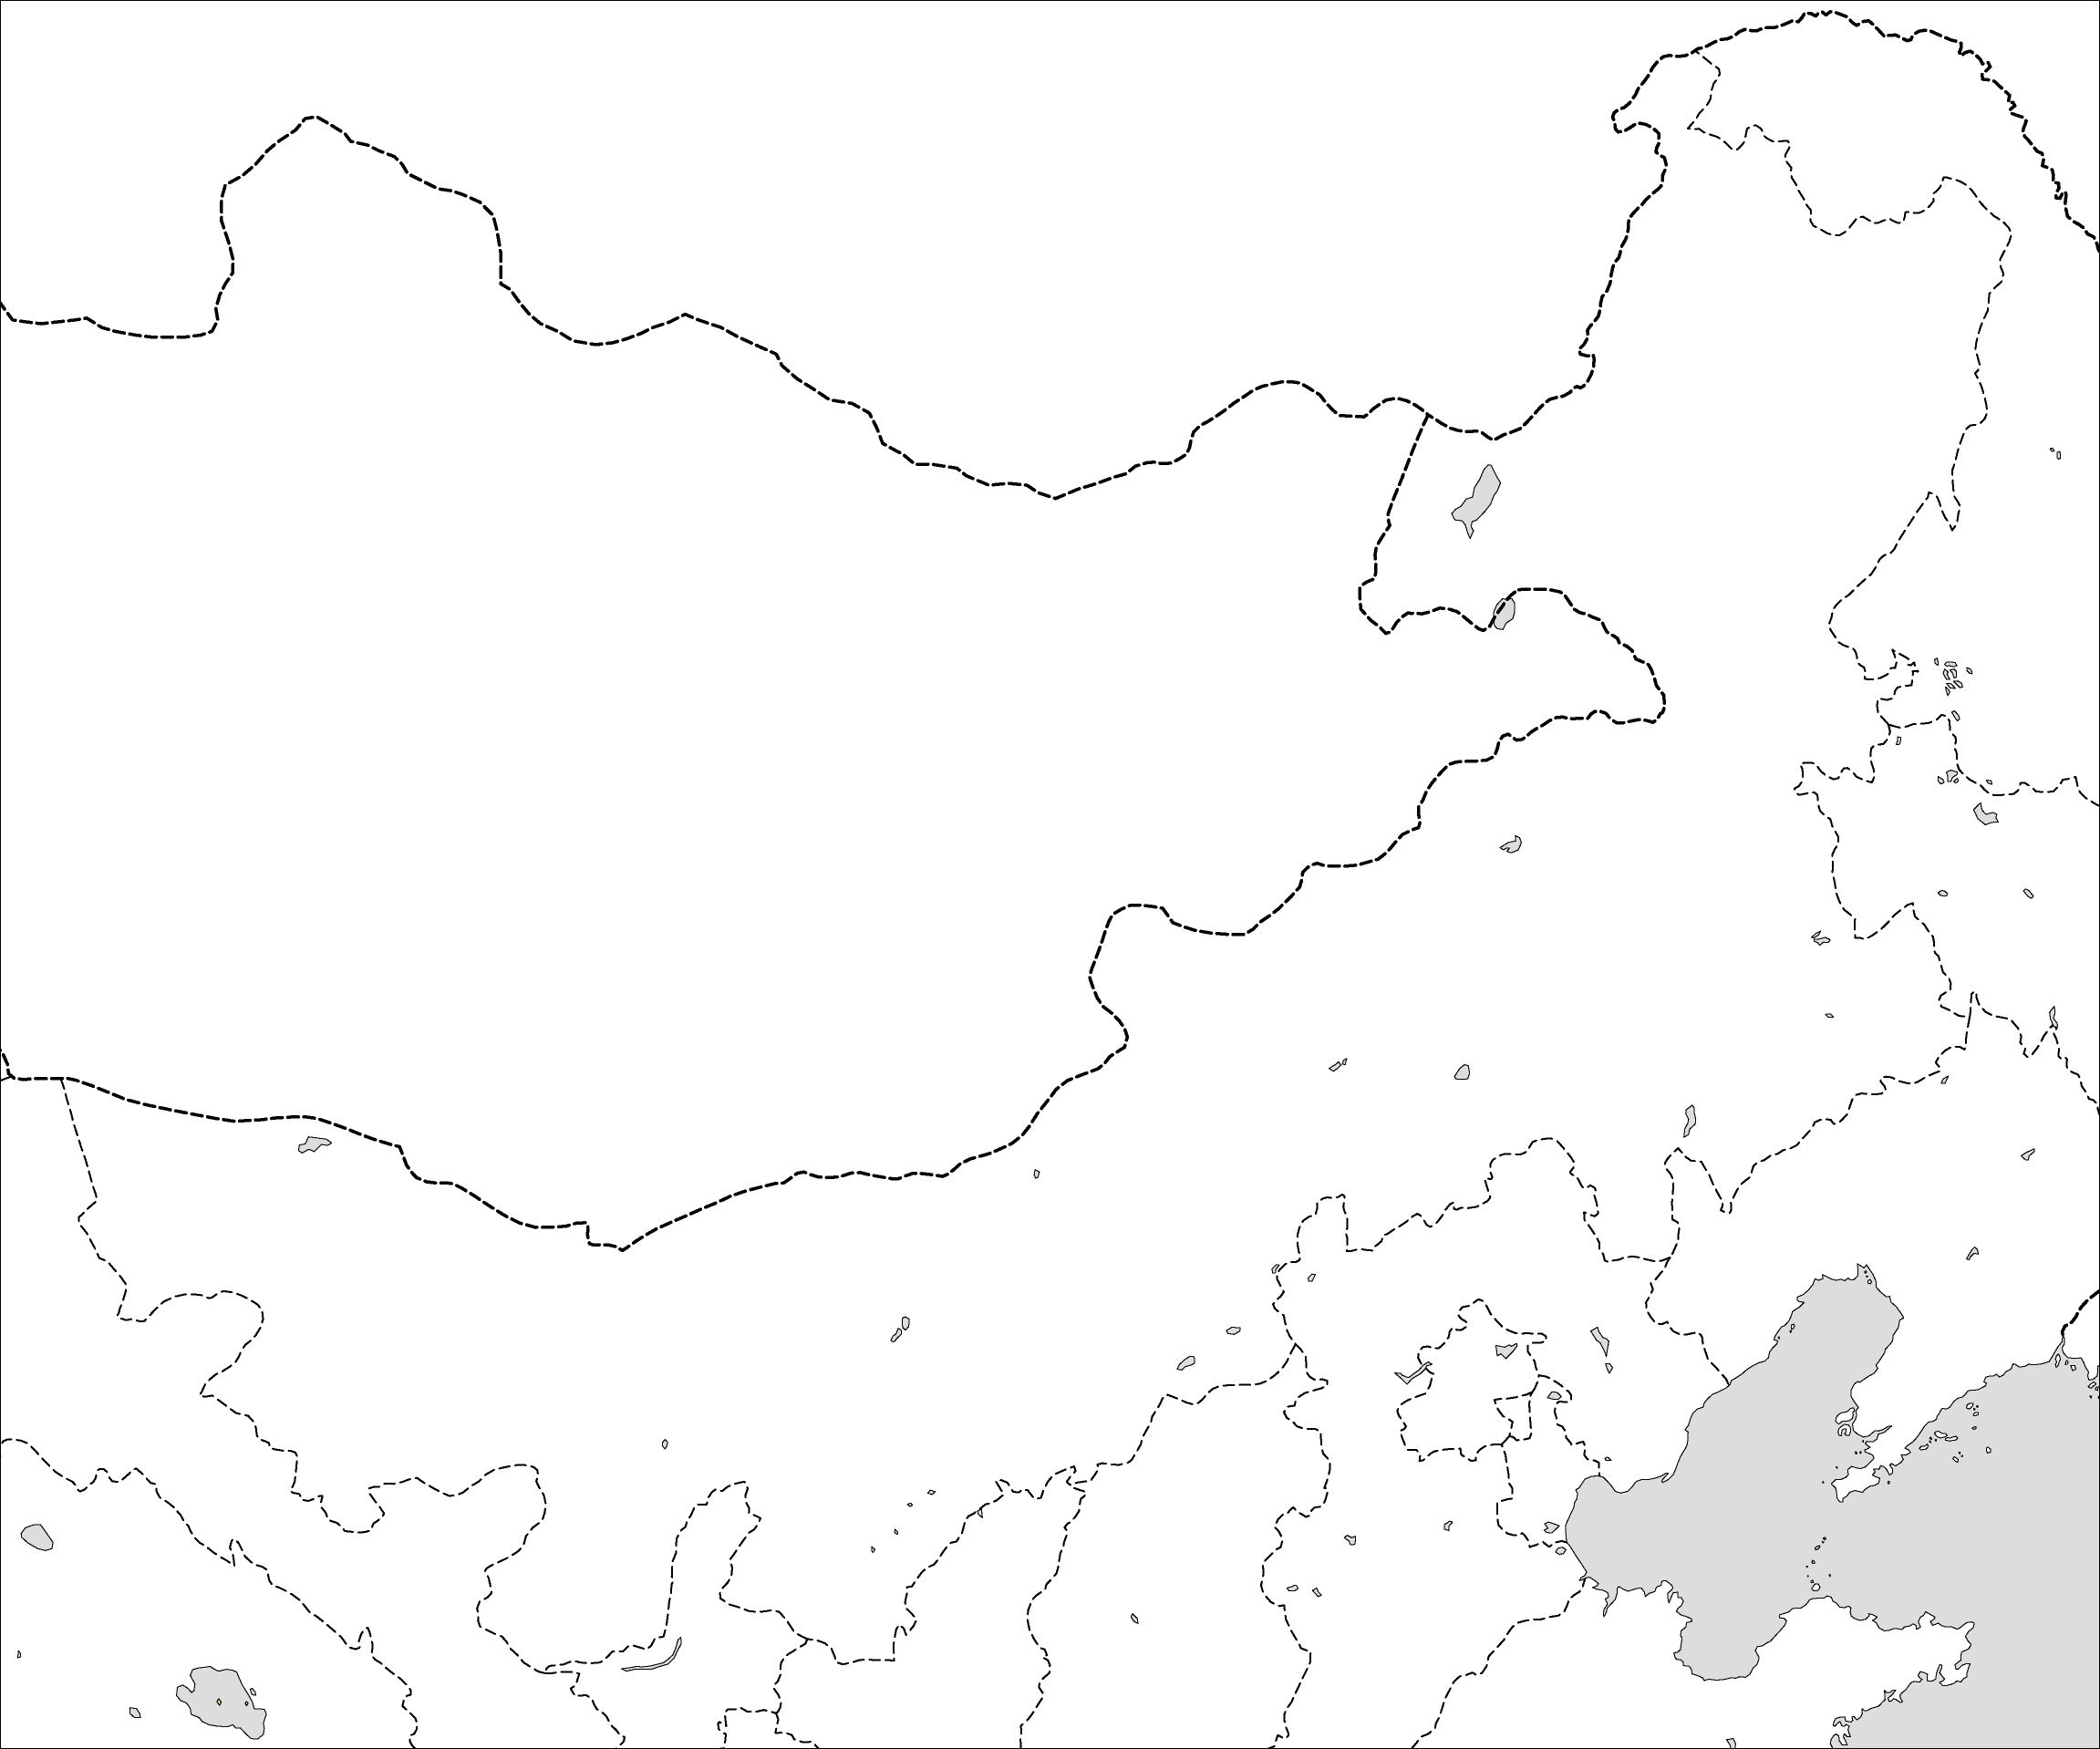 内モンゴル自治区白地図のフリーデータの画像